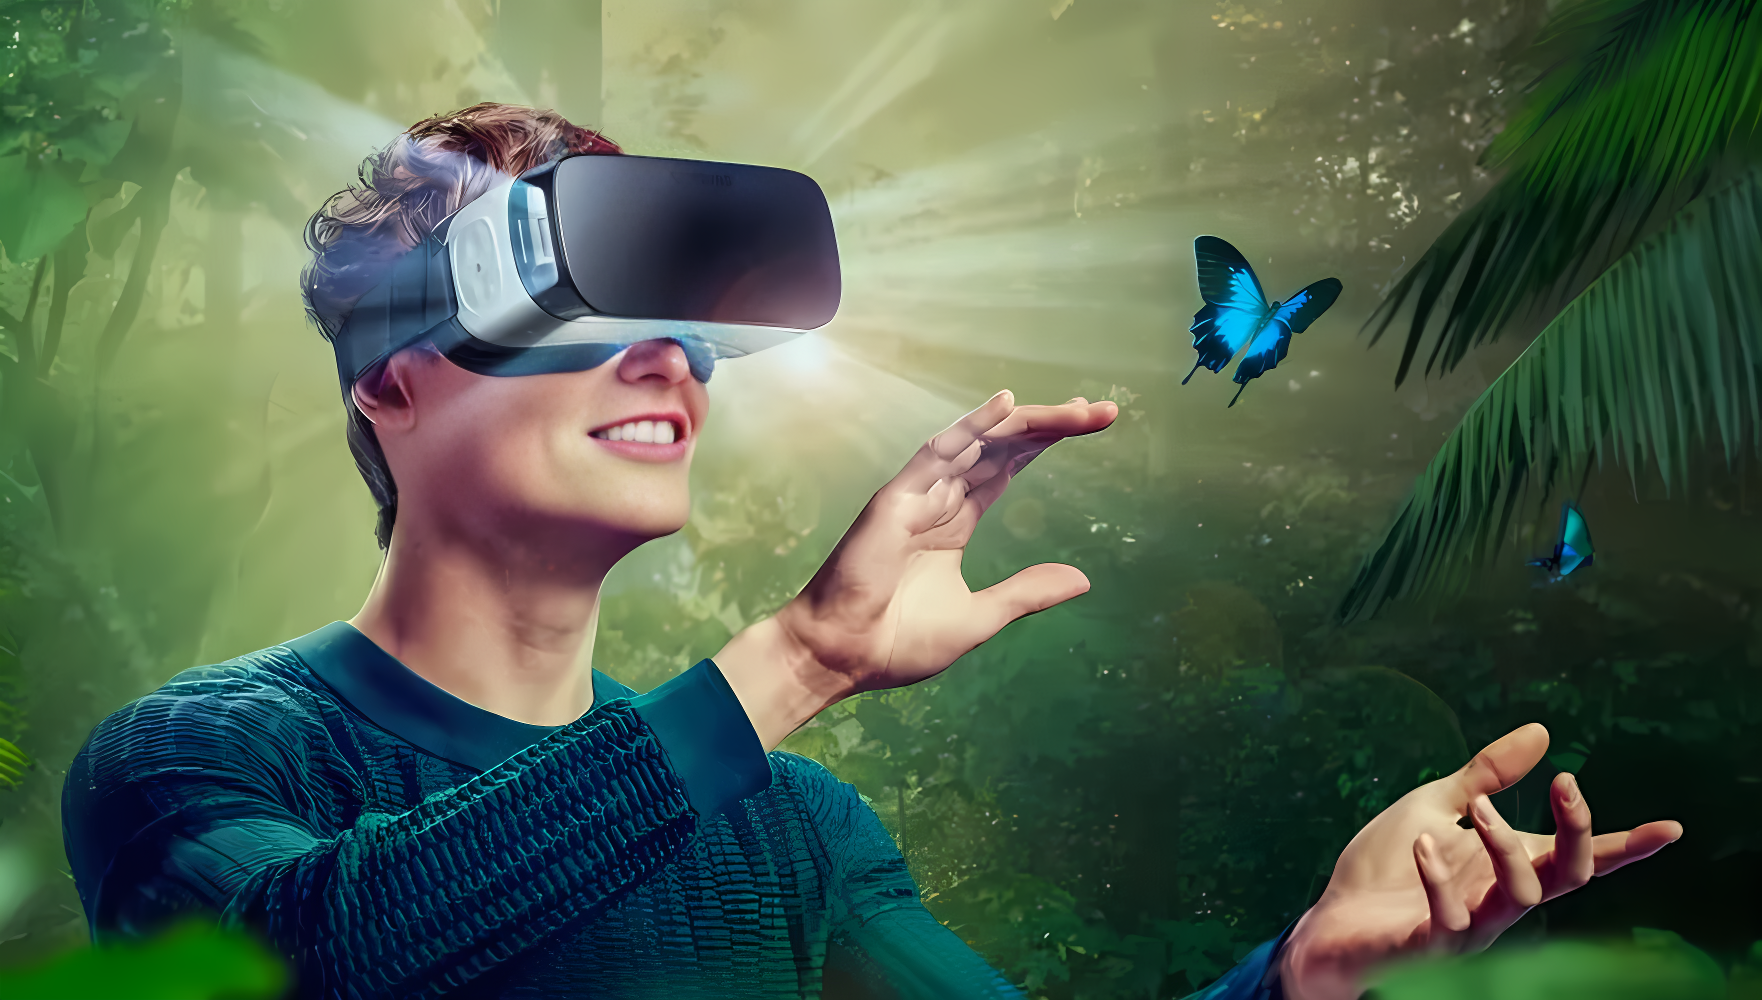 图片展示一位男士戴着虚拟现实头盔，似乎在体验虚拟世界，周围有蝴蝶和绿色植物，表情愉悦，充满好奇。